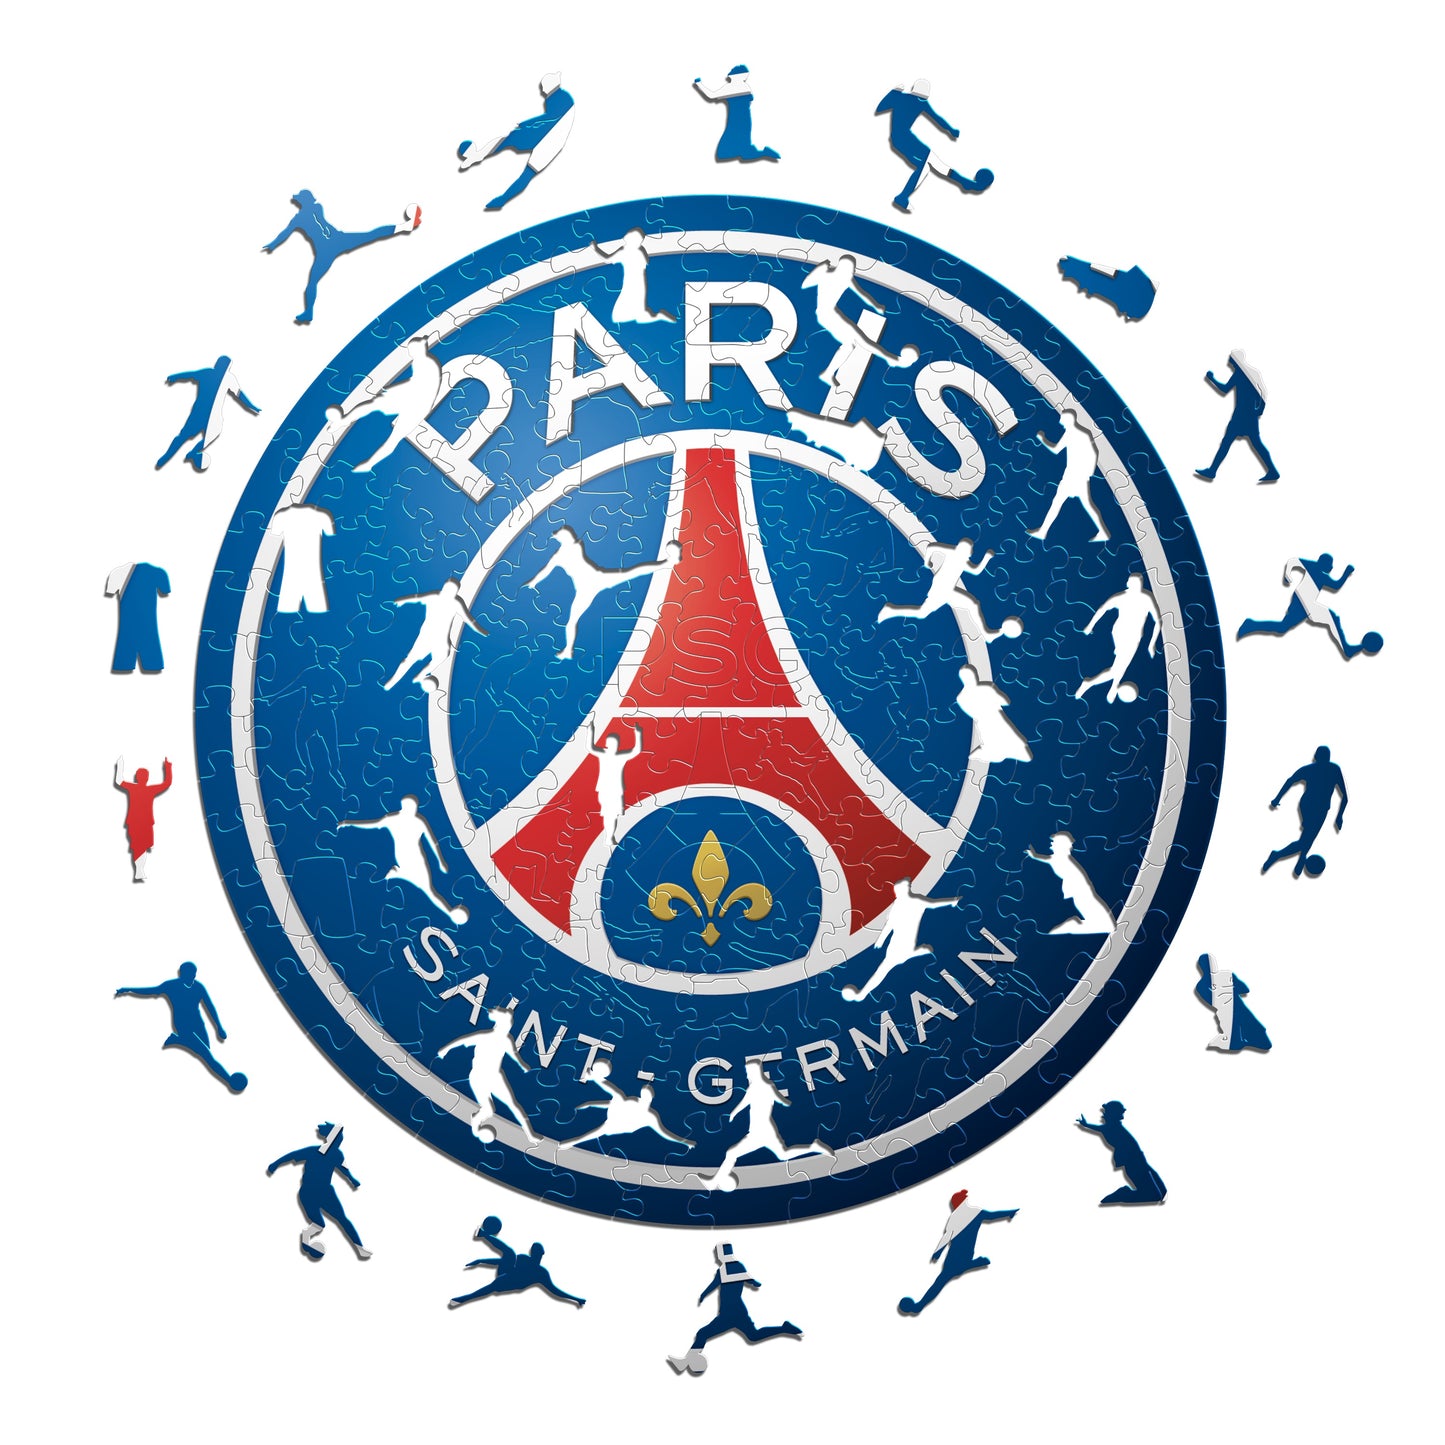 Paris Saint-Germain FC® Crest - Wooden Puzzle